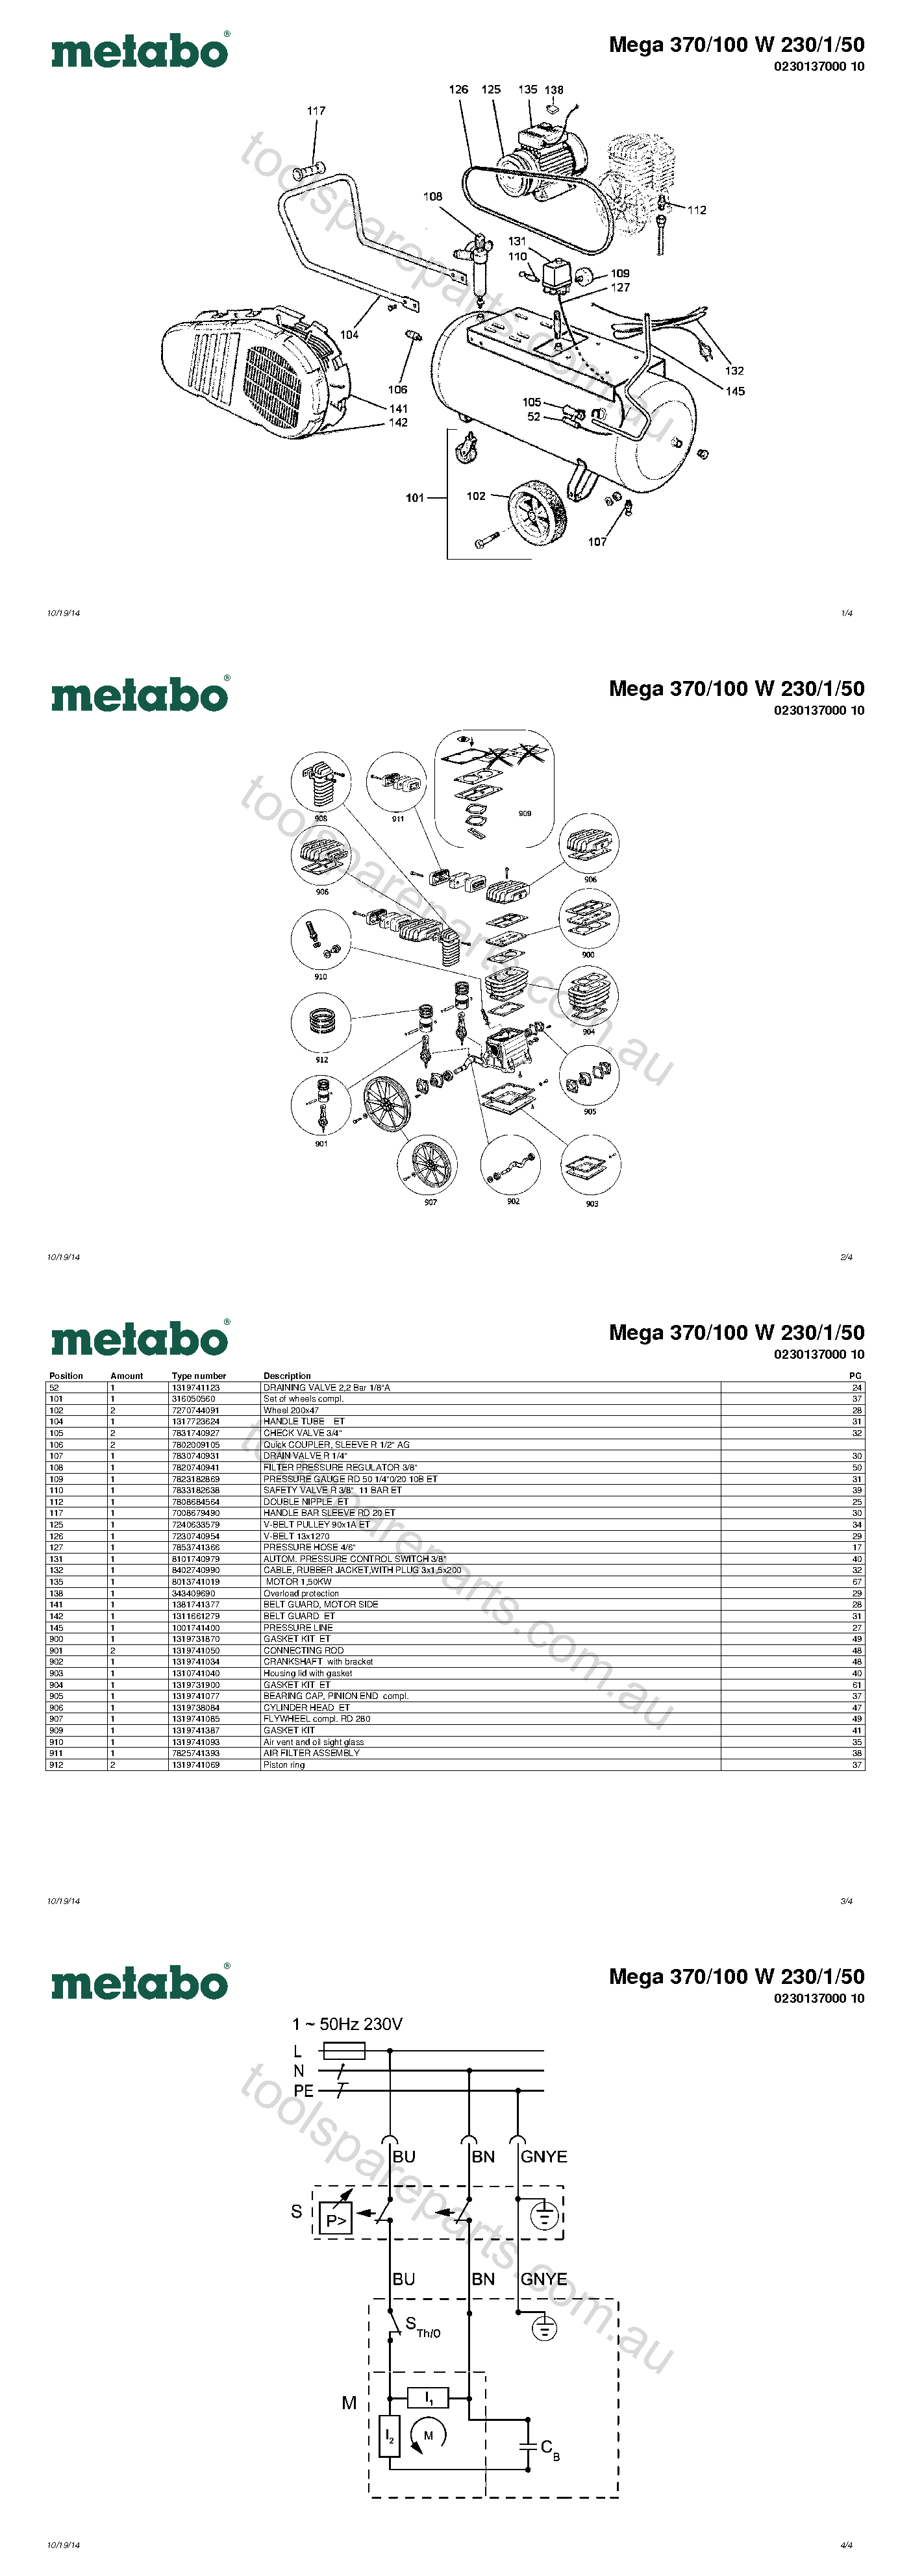 Metabo Mega 370/100 W 230/1/50 0230137000 10  Diagram 1